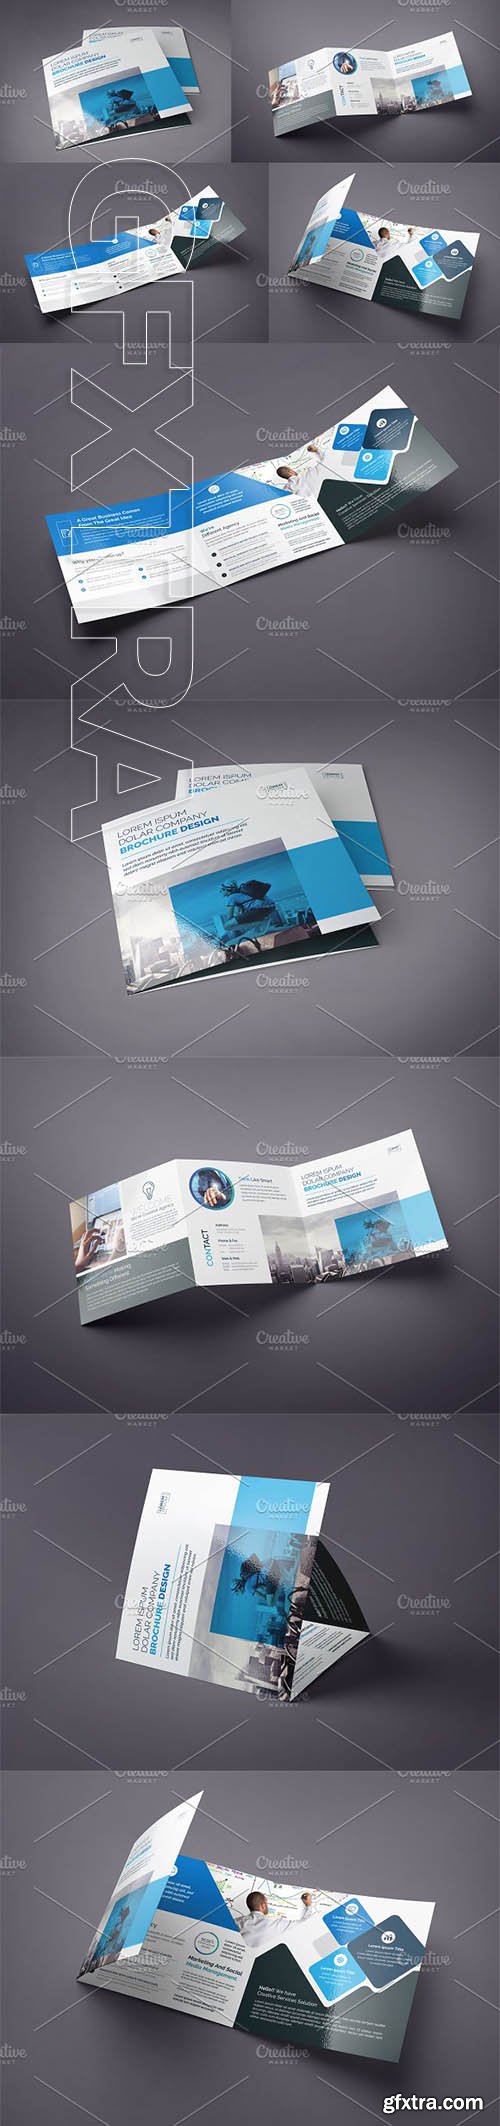 CreativeMarket - Blue Square Tri-Fold Brochure 2928884